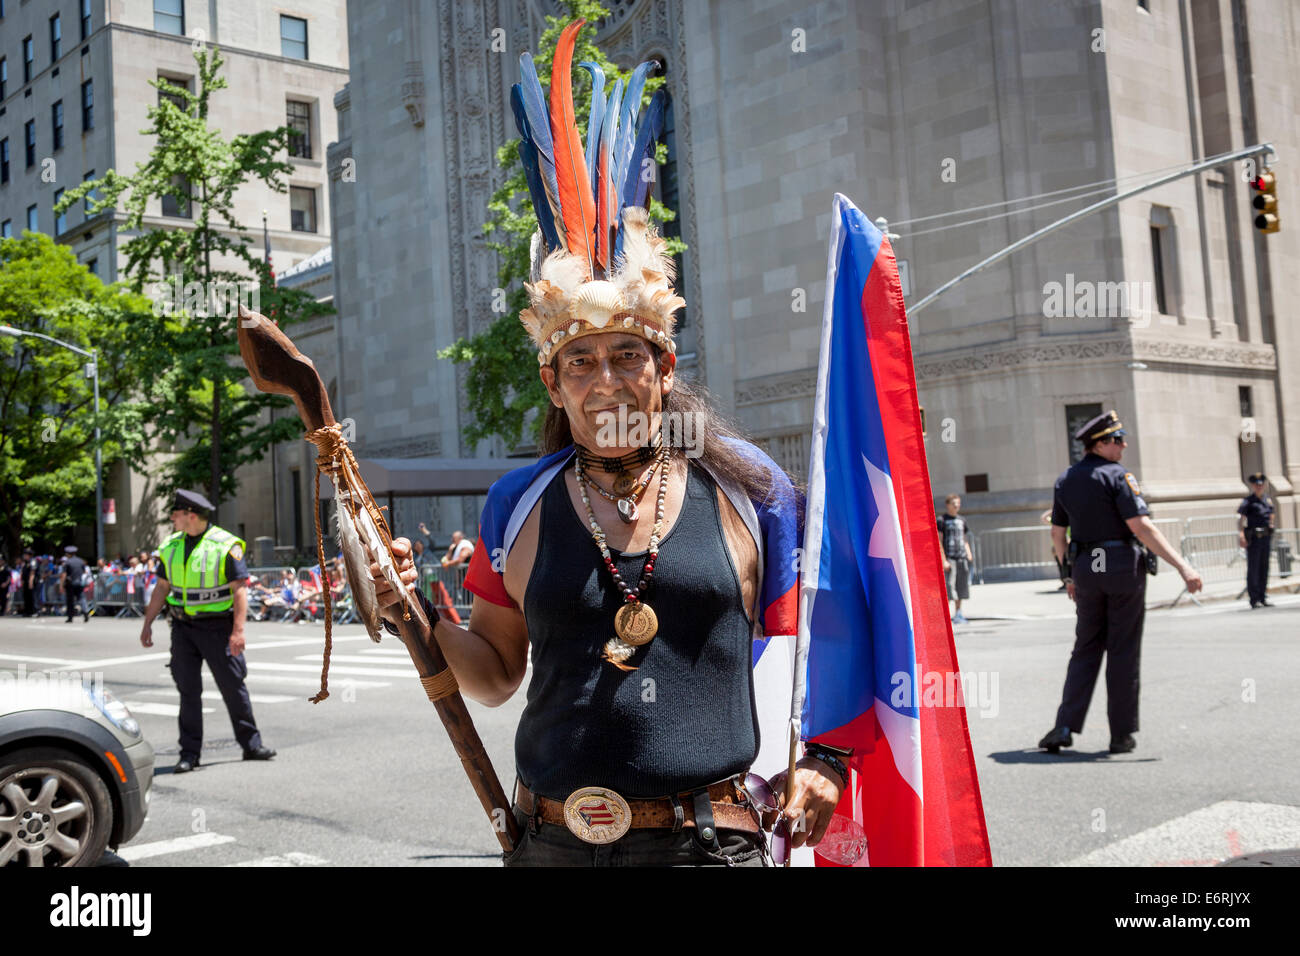 Hombre con vestimentas nativas de los indios americanos del sur, el 8 de junio de 2014 Puerto Rico Parade, Manhattan, Ciudad de Nueva York, Nueva York, EE.UU. Foto de stock